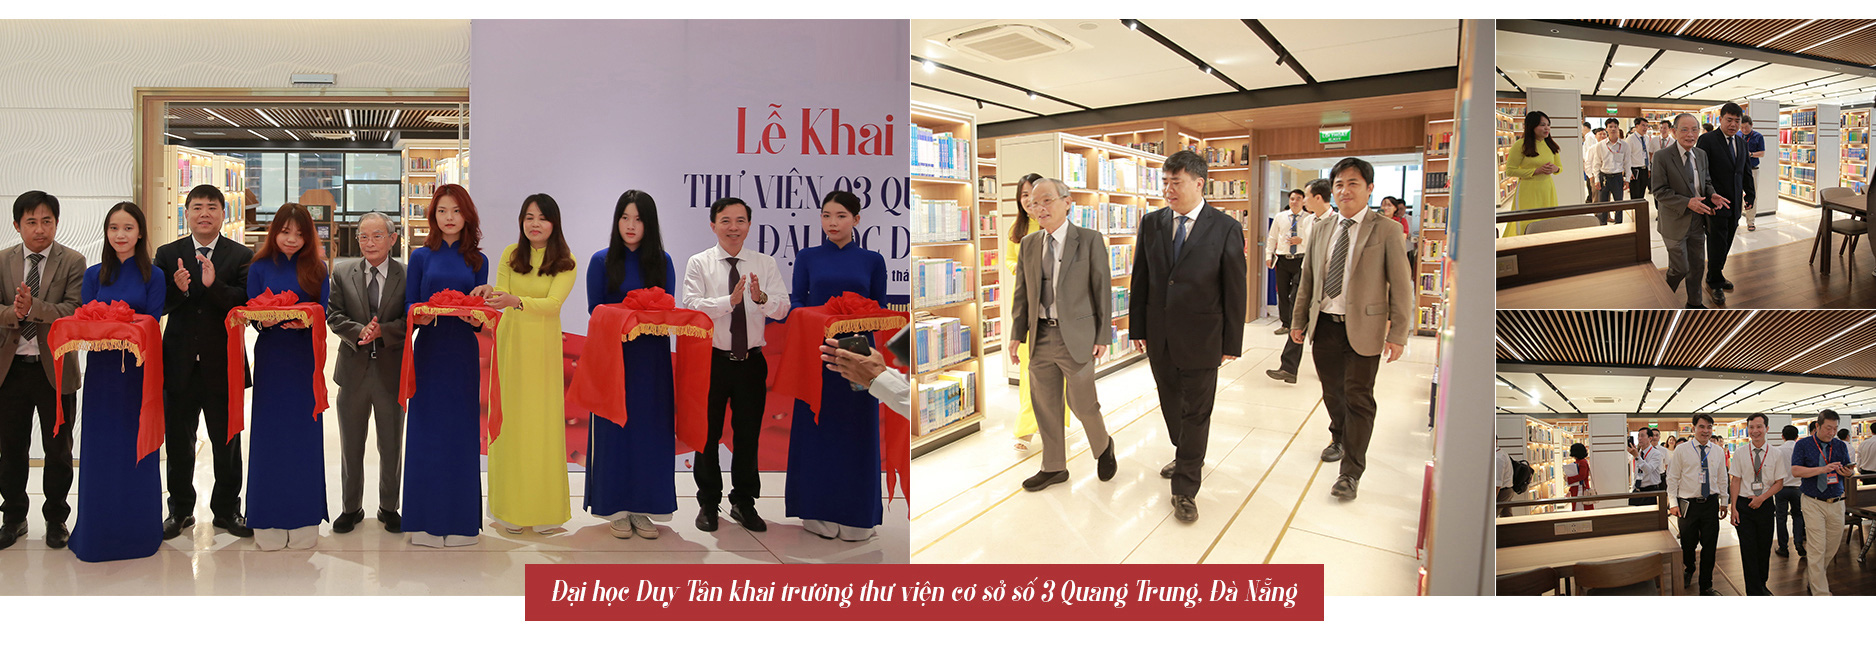 Thư viện mới của Đại học Duy Tân đúng chuẩn gu sinh viên Gen Z - Ảnh 1.